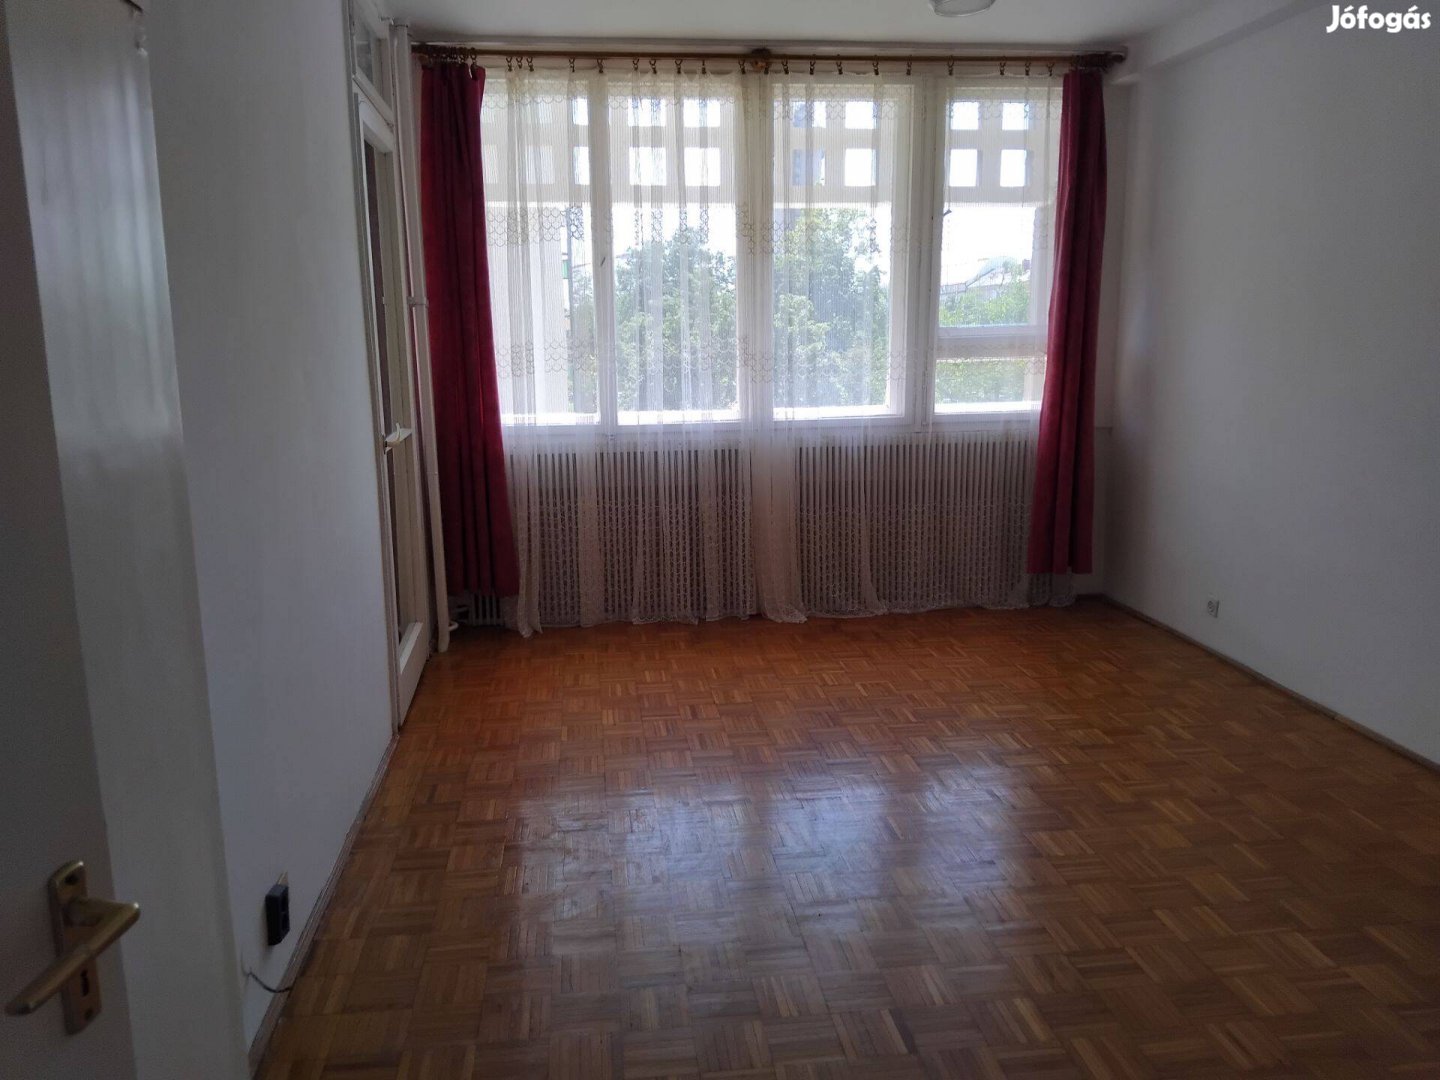 Debrecen, Holló János utca, 55 m2-es, 2. emeleti lakás eladó!